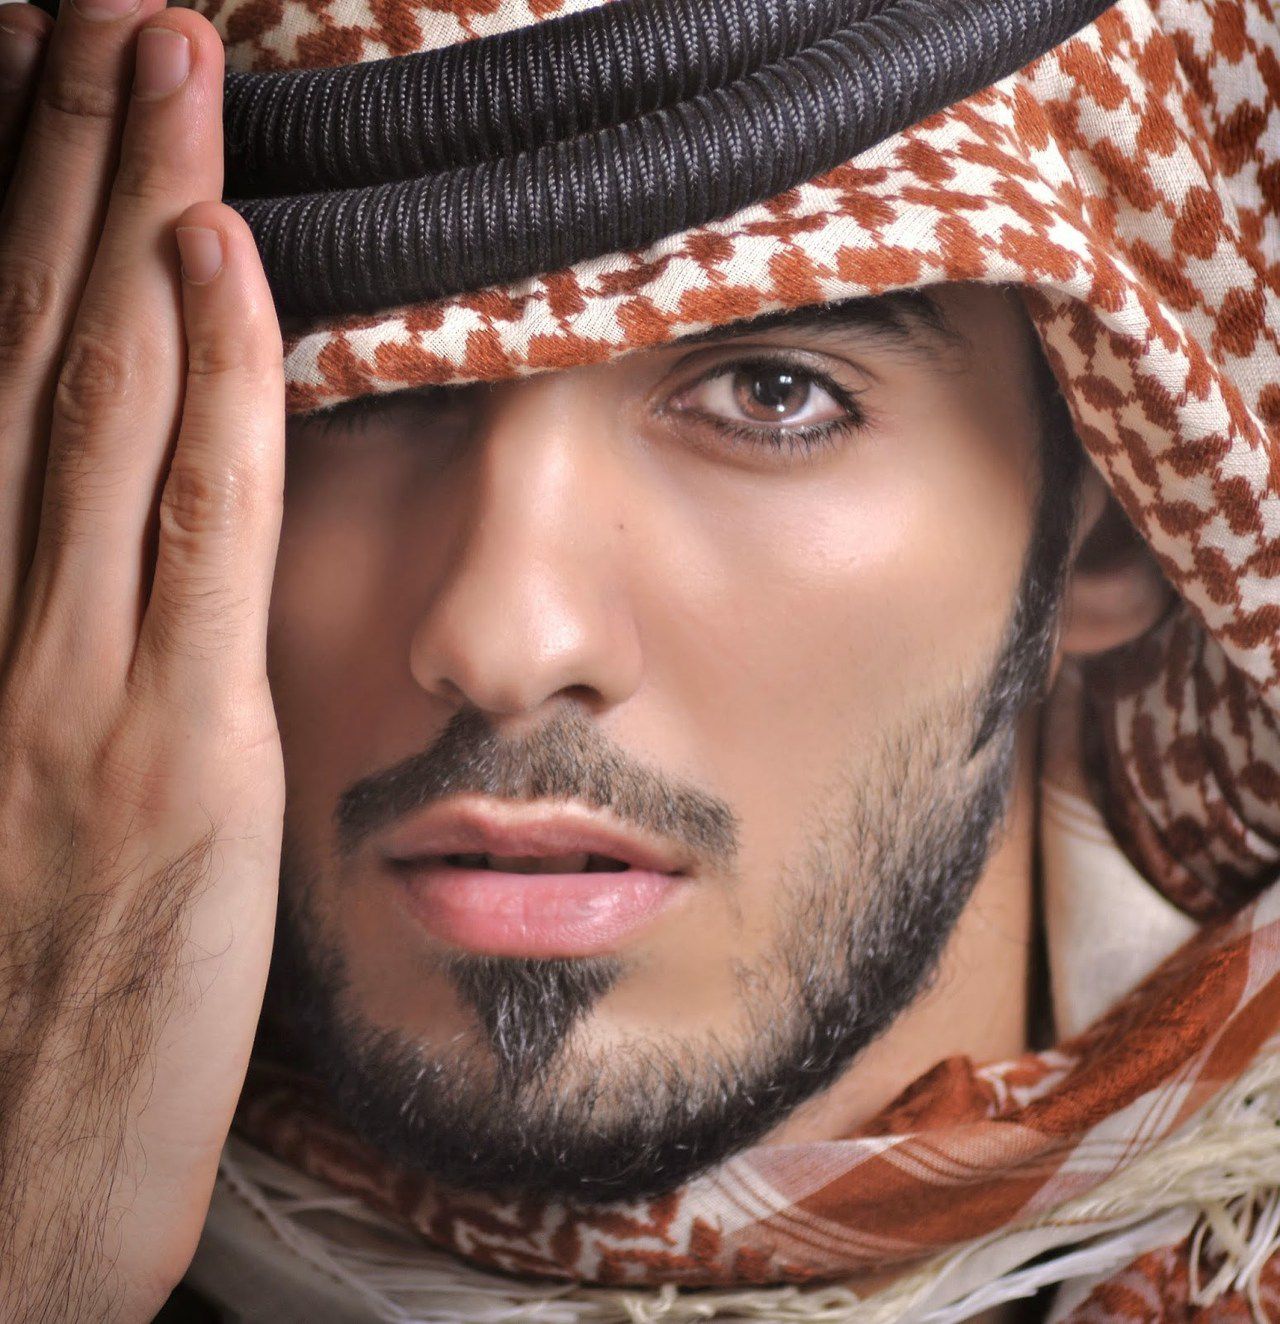 Truyền thông gọi anh là Người đàn ông Ả Rập đẹp nhất hành tinh.